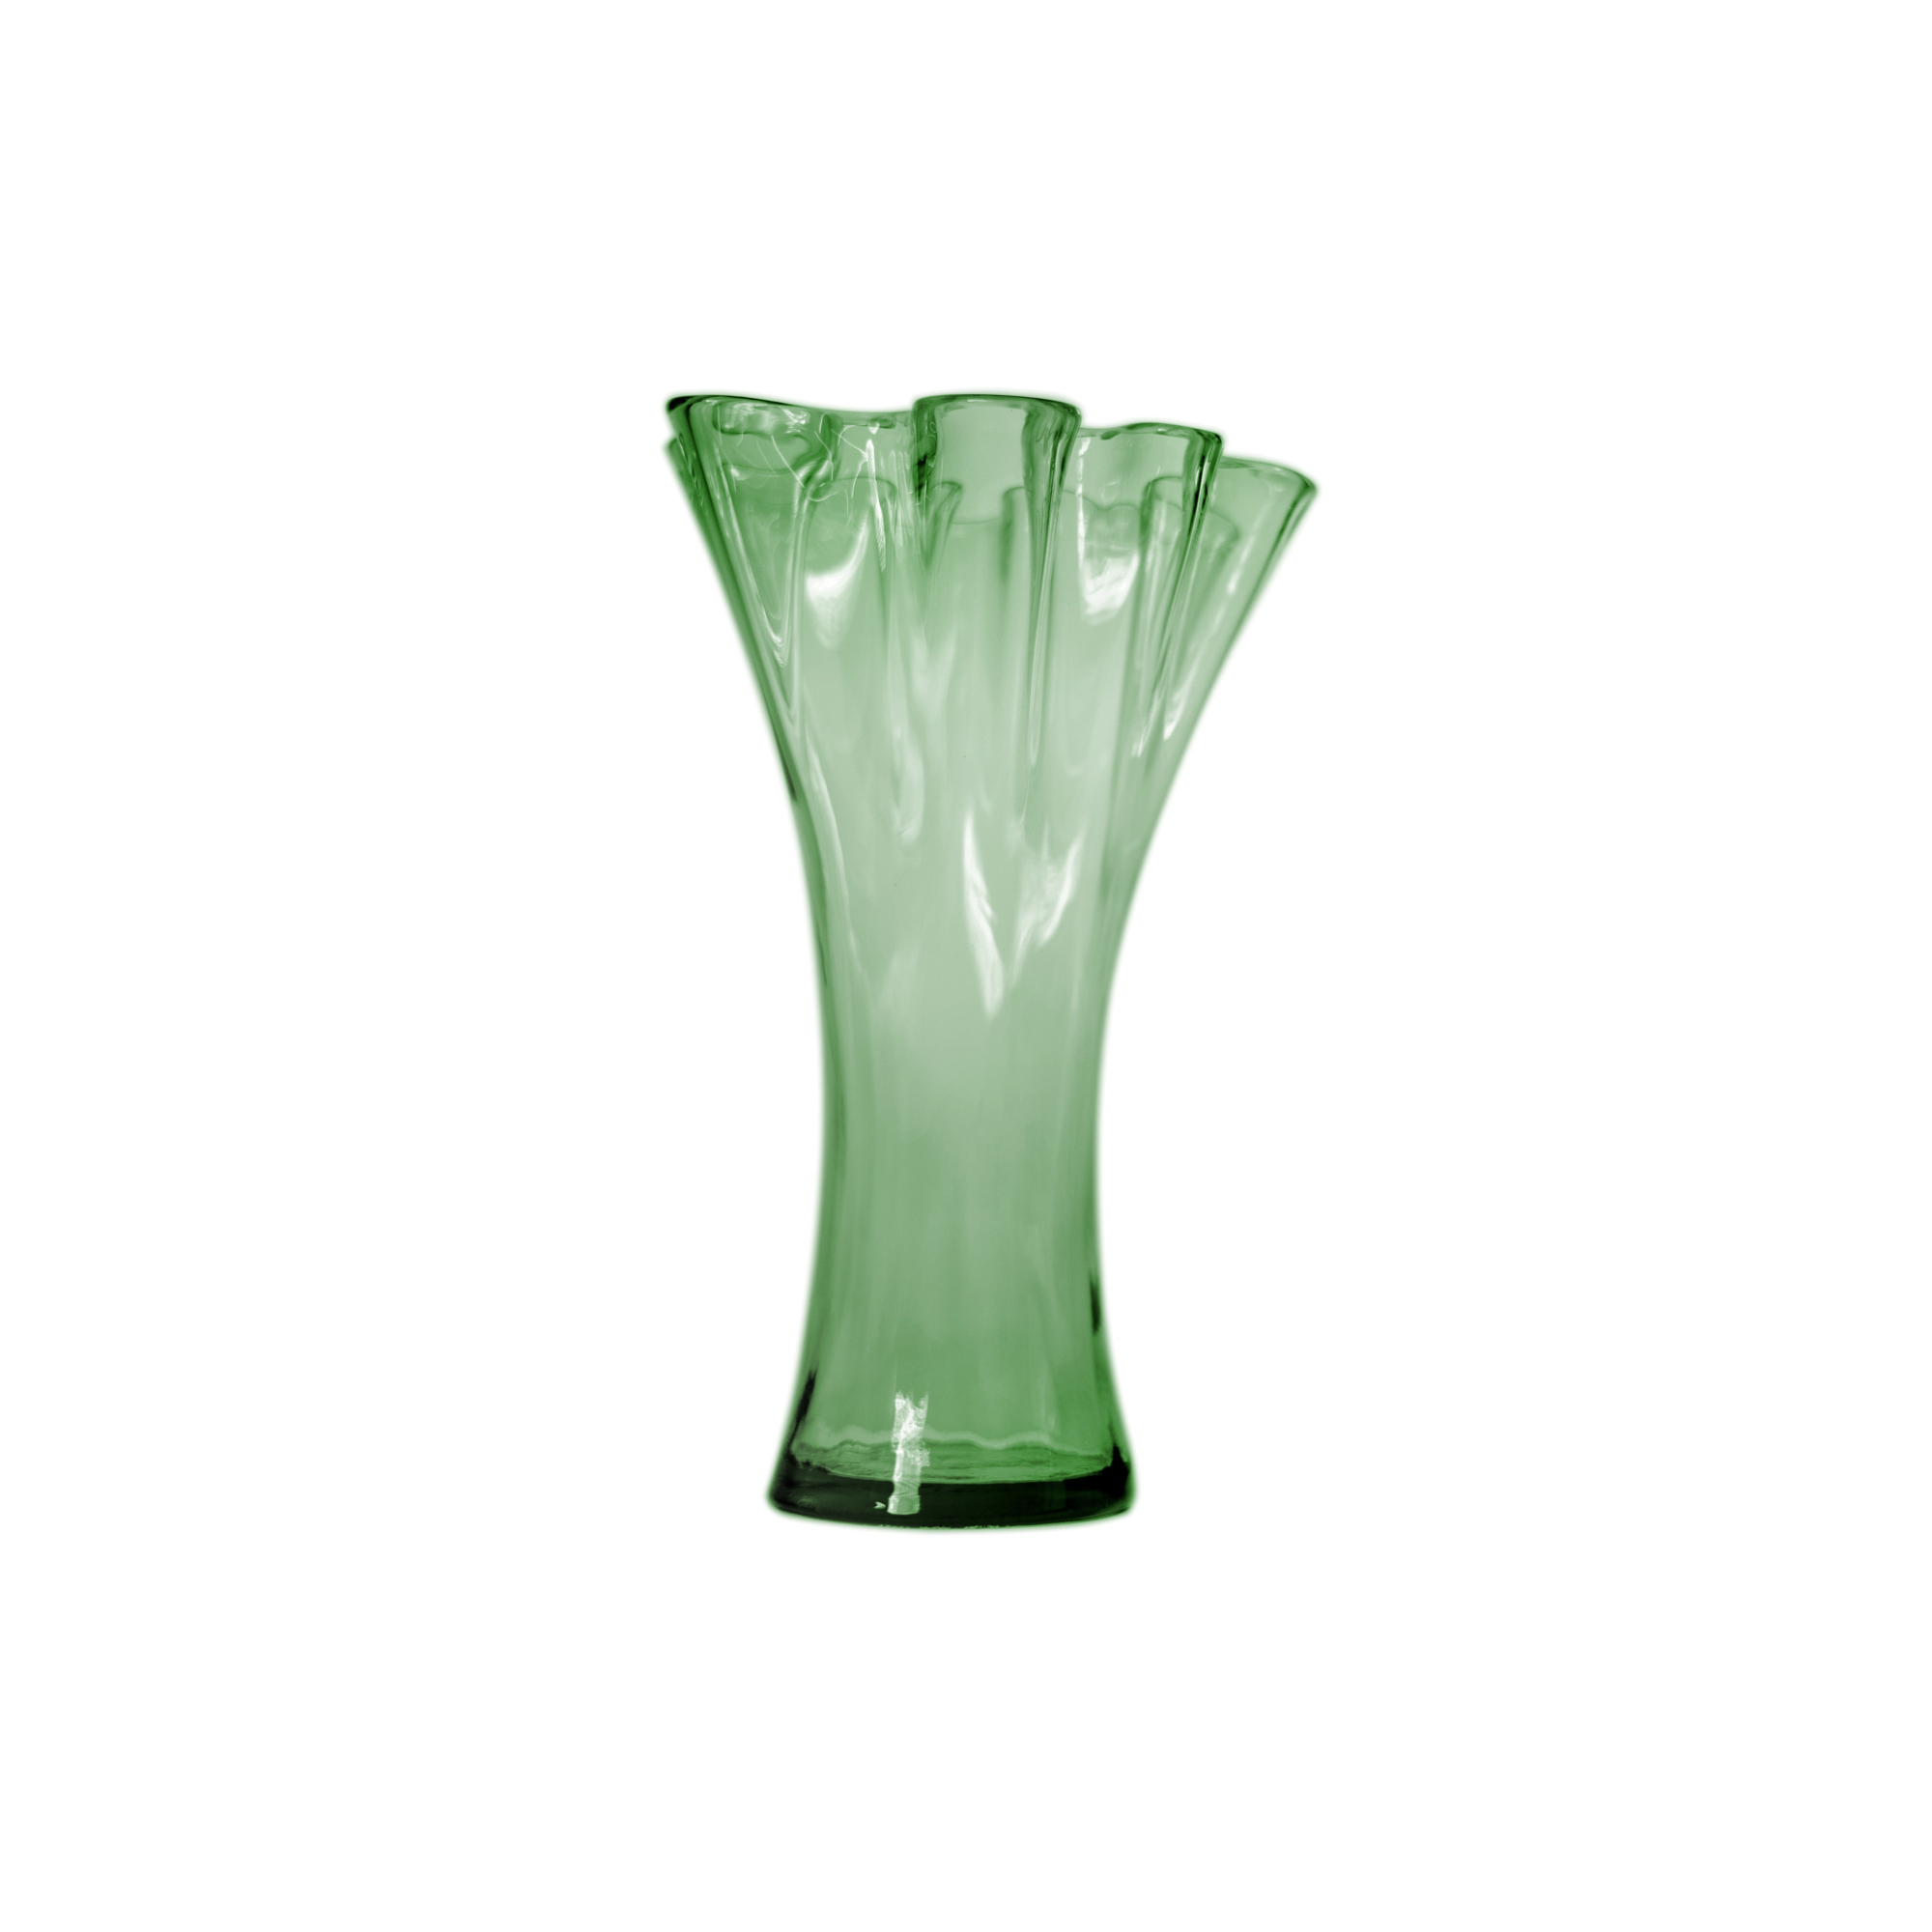 Ваза San miguel Artesania темно-зелёный 30 см ваза san miguel enea тёмно коричневая 33 см